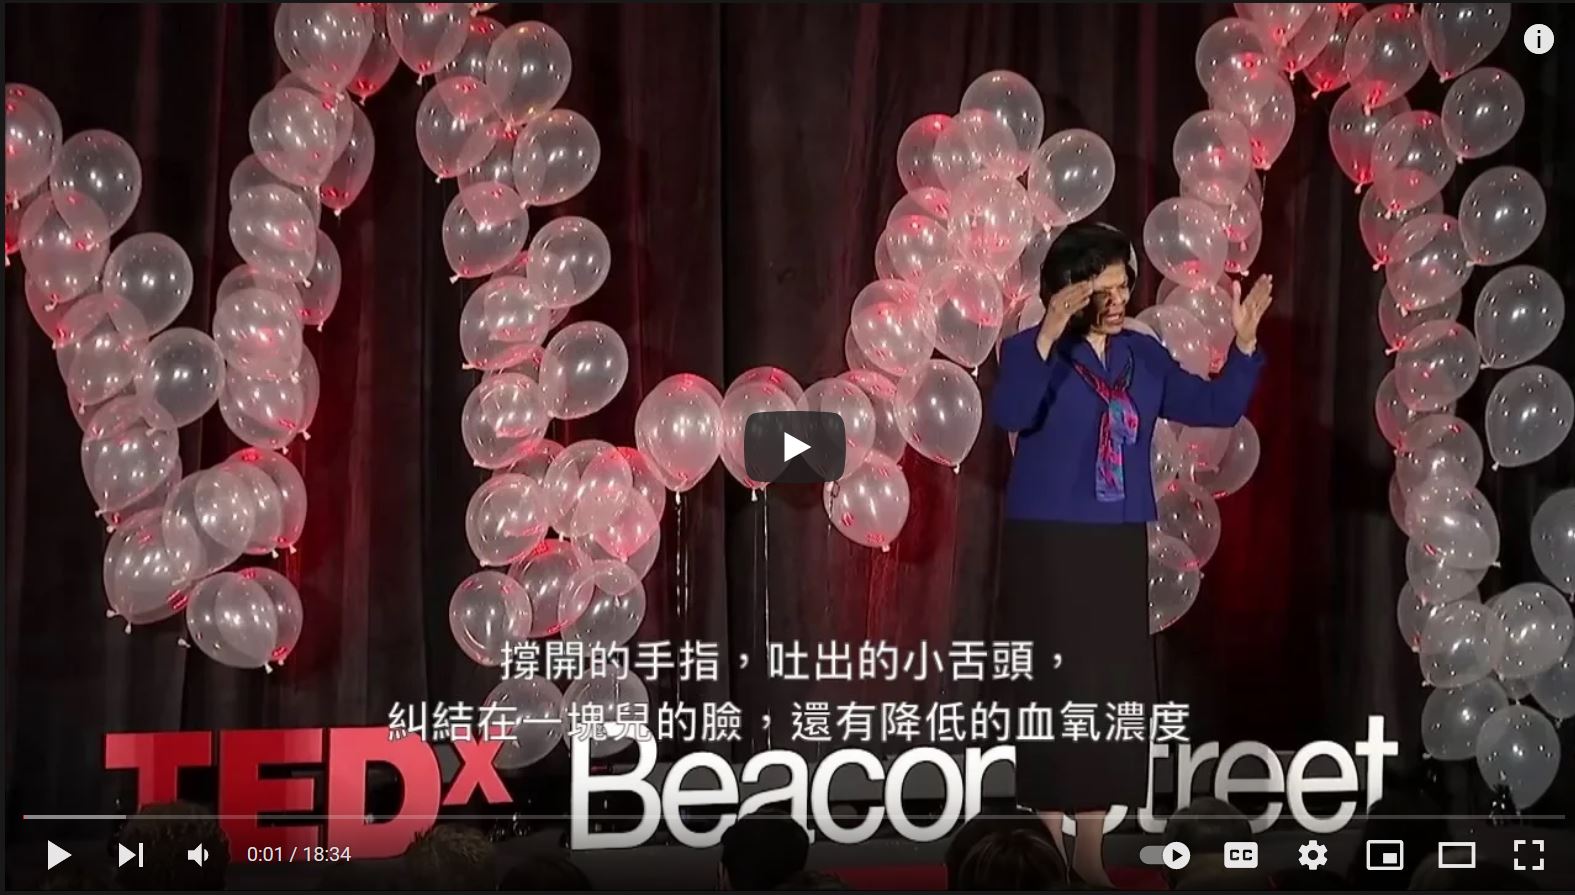 TEDx 音樂治療與醫學:強而有力的夥伴關係-Dr. Deforia Lane(中文翻譯)